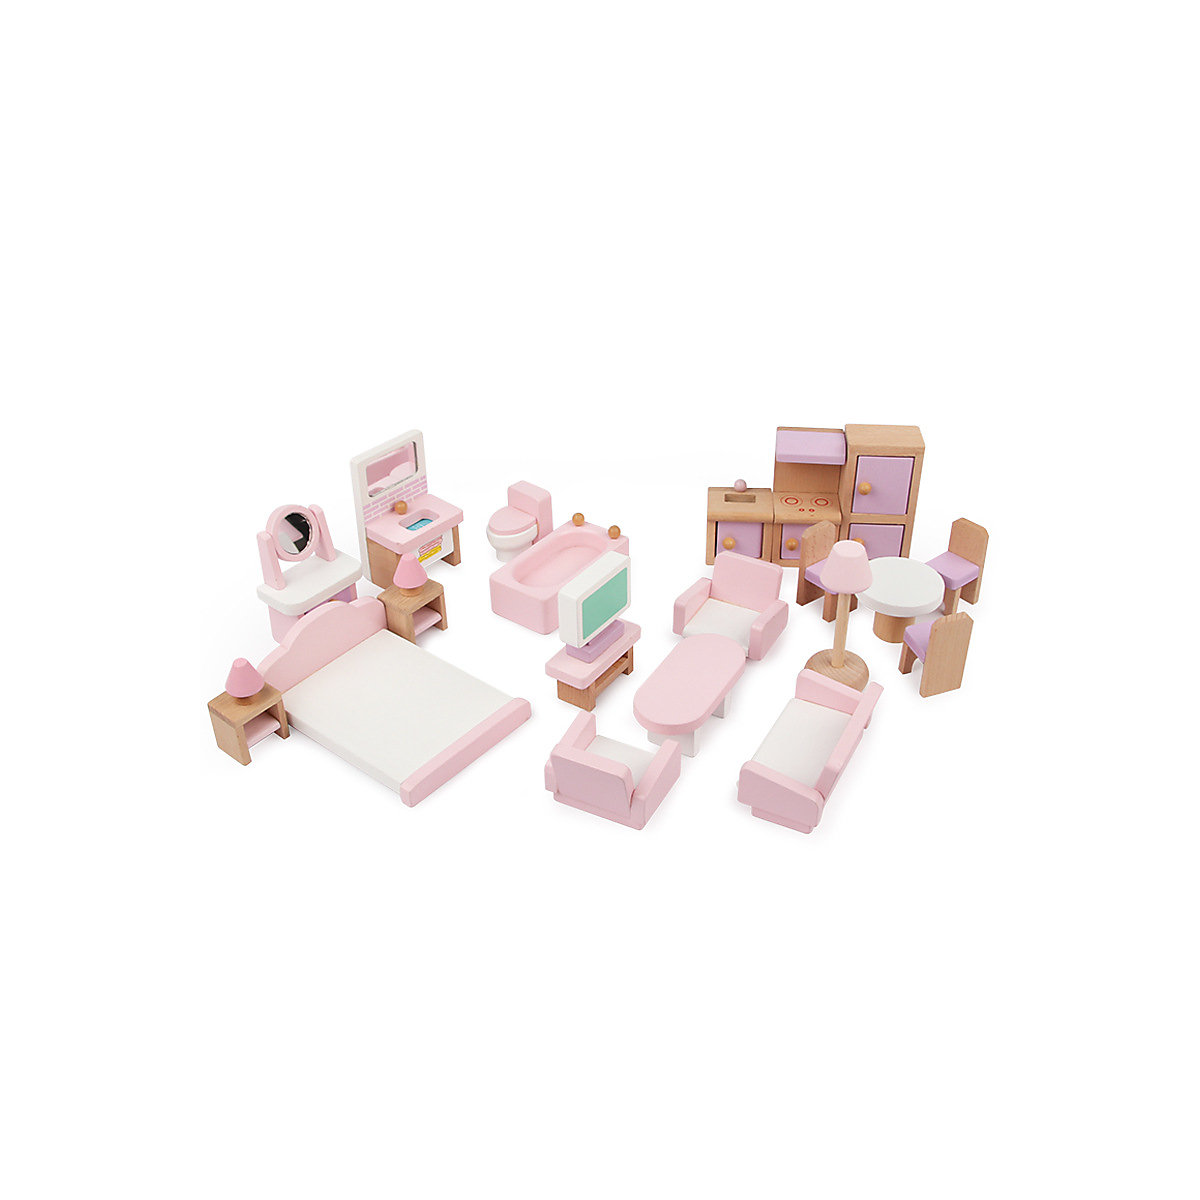 Epik Kinderspielhaus Möbel Spielzeug 22 STÜCKE kleine rosafarbene Möbel